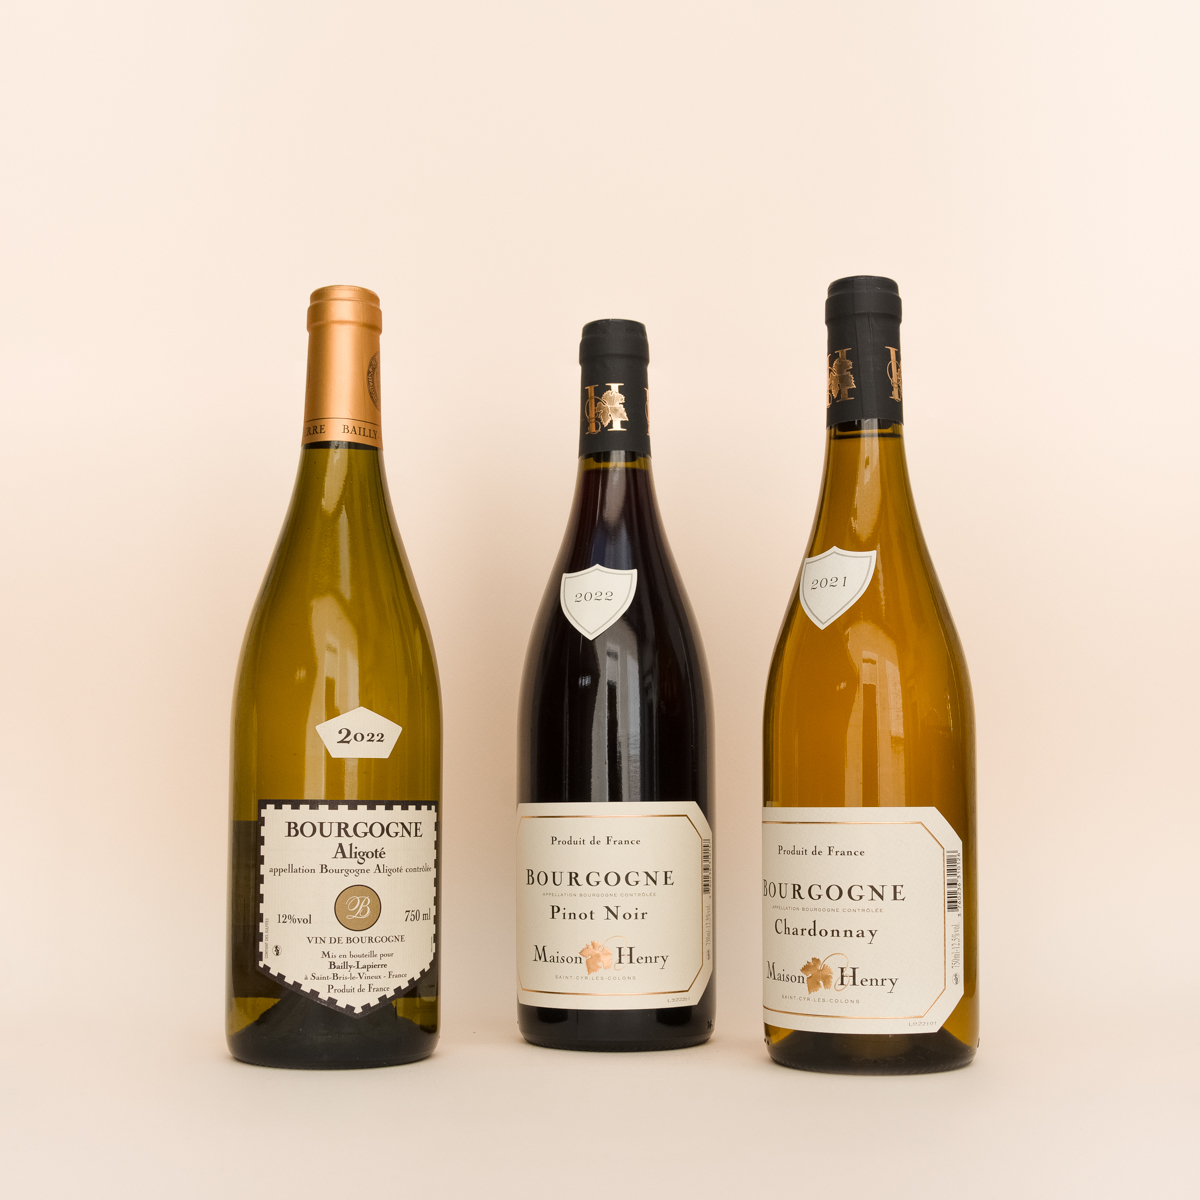 Coffret cadeau 3 bouteilles composé de 3 vins de Bourgogne : 1 Bourgogne Aligoté, 1 Pinot Noir, 1 Chardonnay